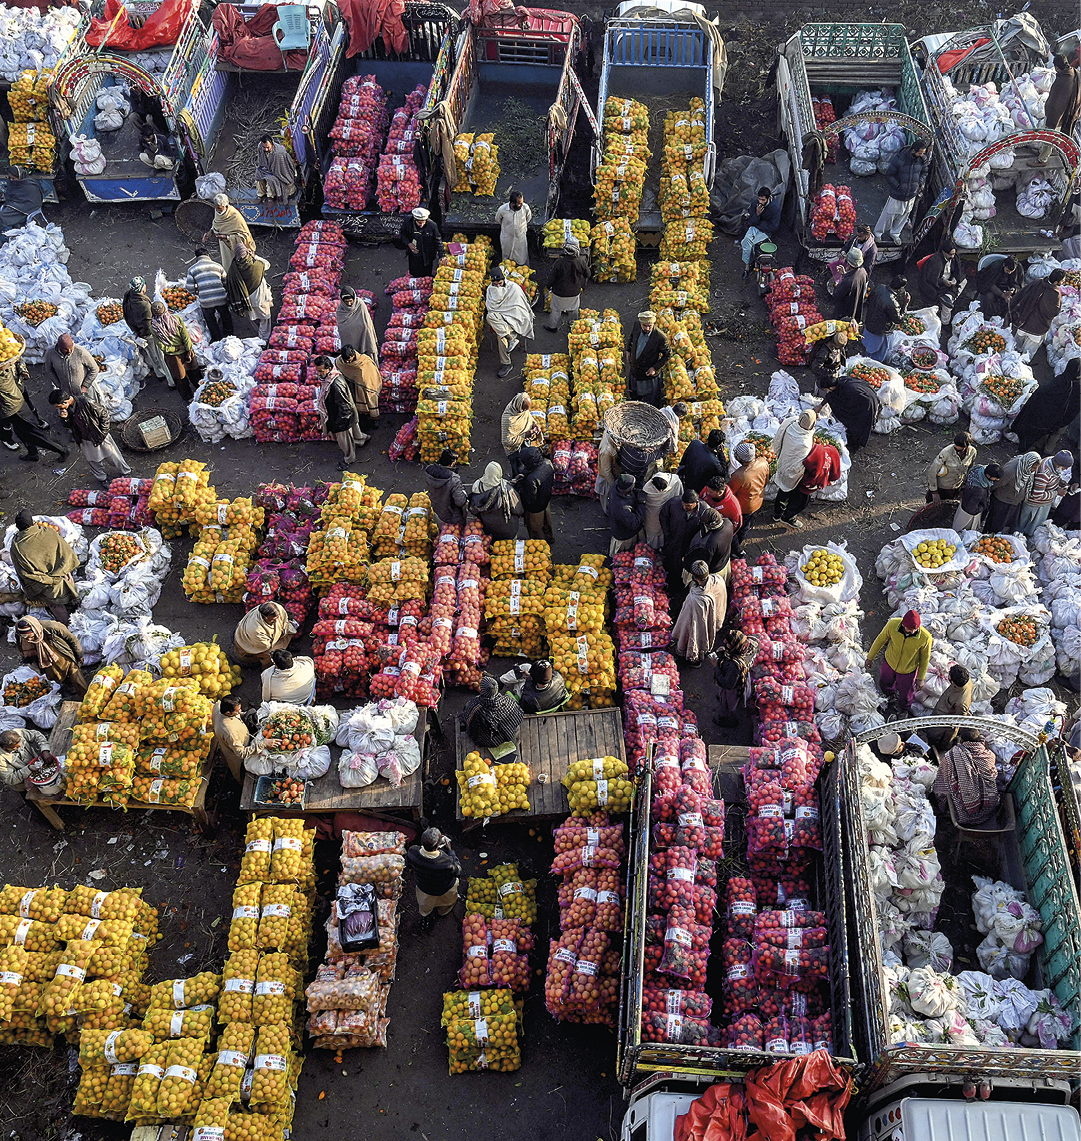 Fotografia. Vista vertical de feira livre situada em um local aberto, cujos produtos estão ensacados e empilhados no chão. Há sacos brancos, amarelos, laranjas e vermelhos. Entre as pilhas dos produtos, algumas pessoas circulam na área.